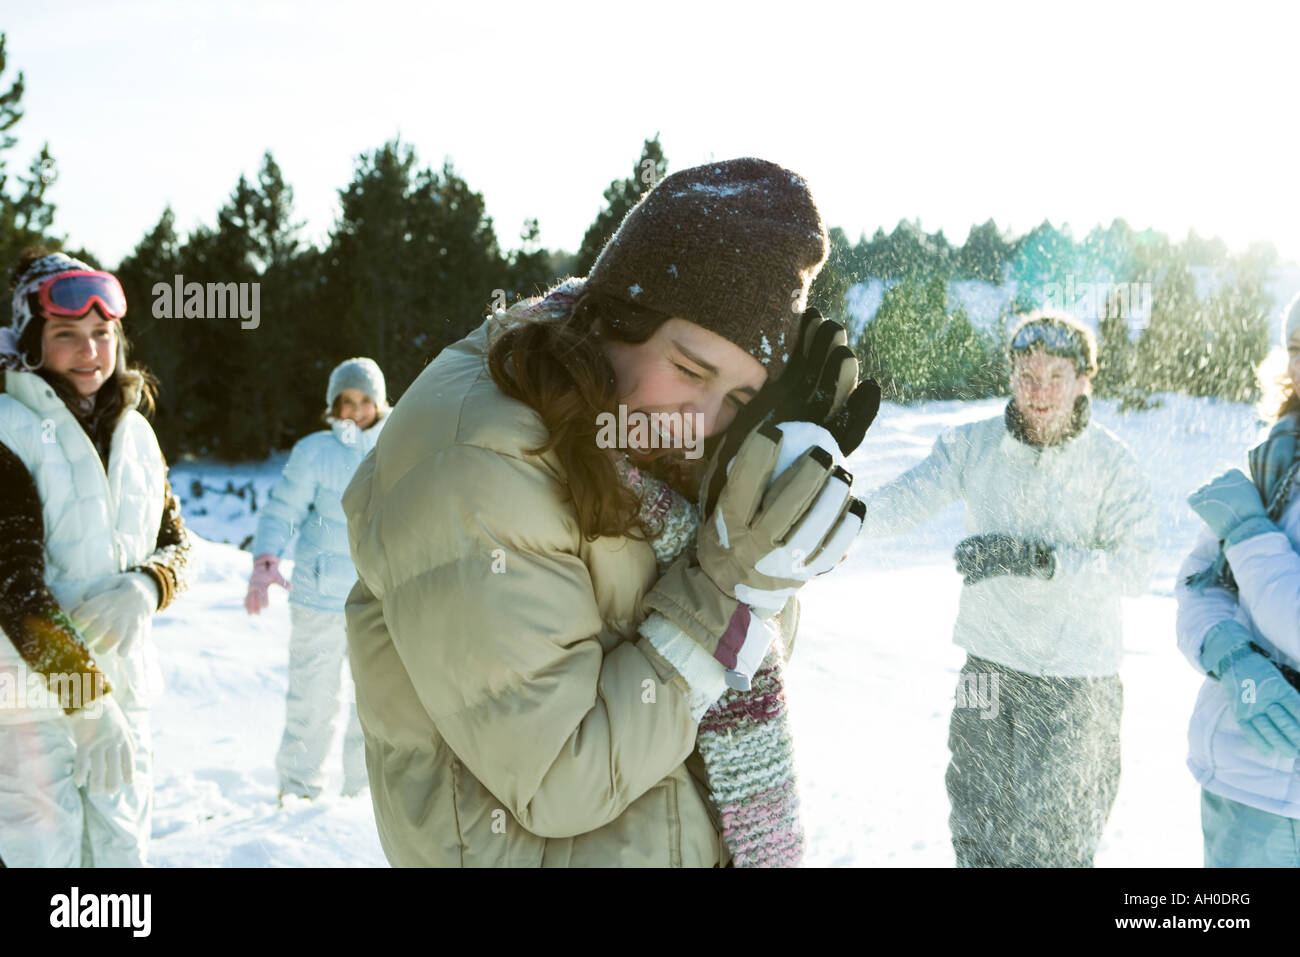 Junge Freunde werfen Schneebälle, lächelnd, verschwommen Bewegung Stockfoto